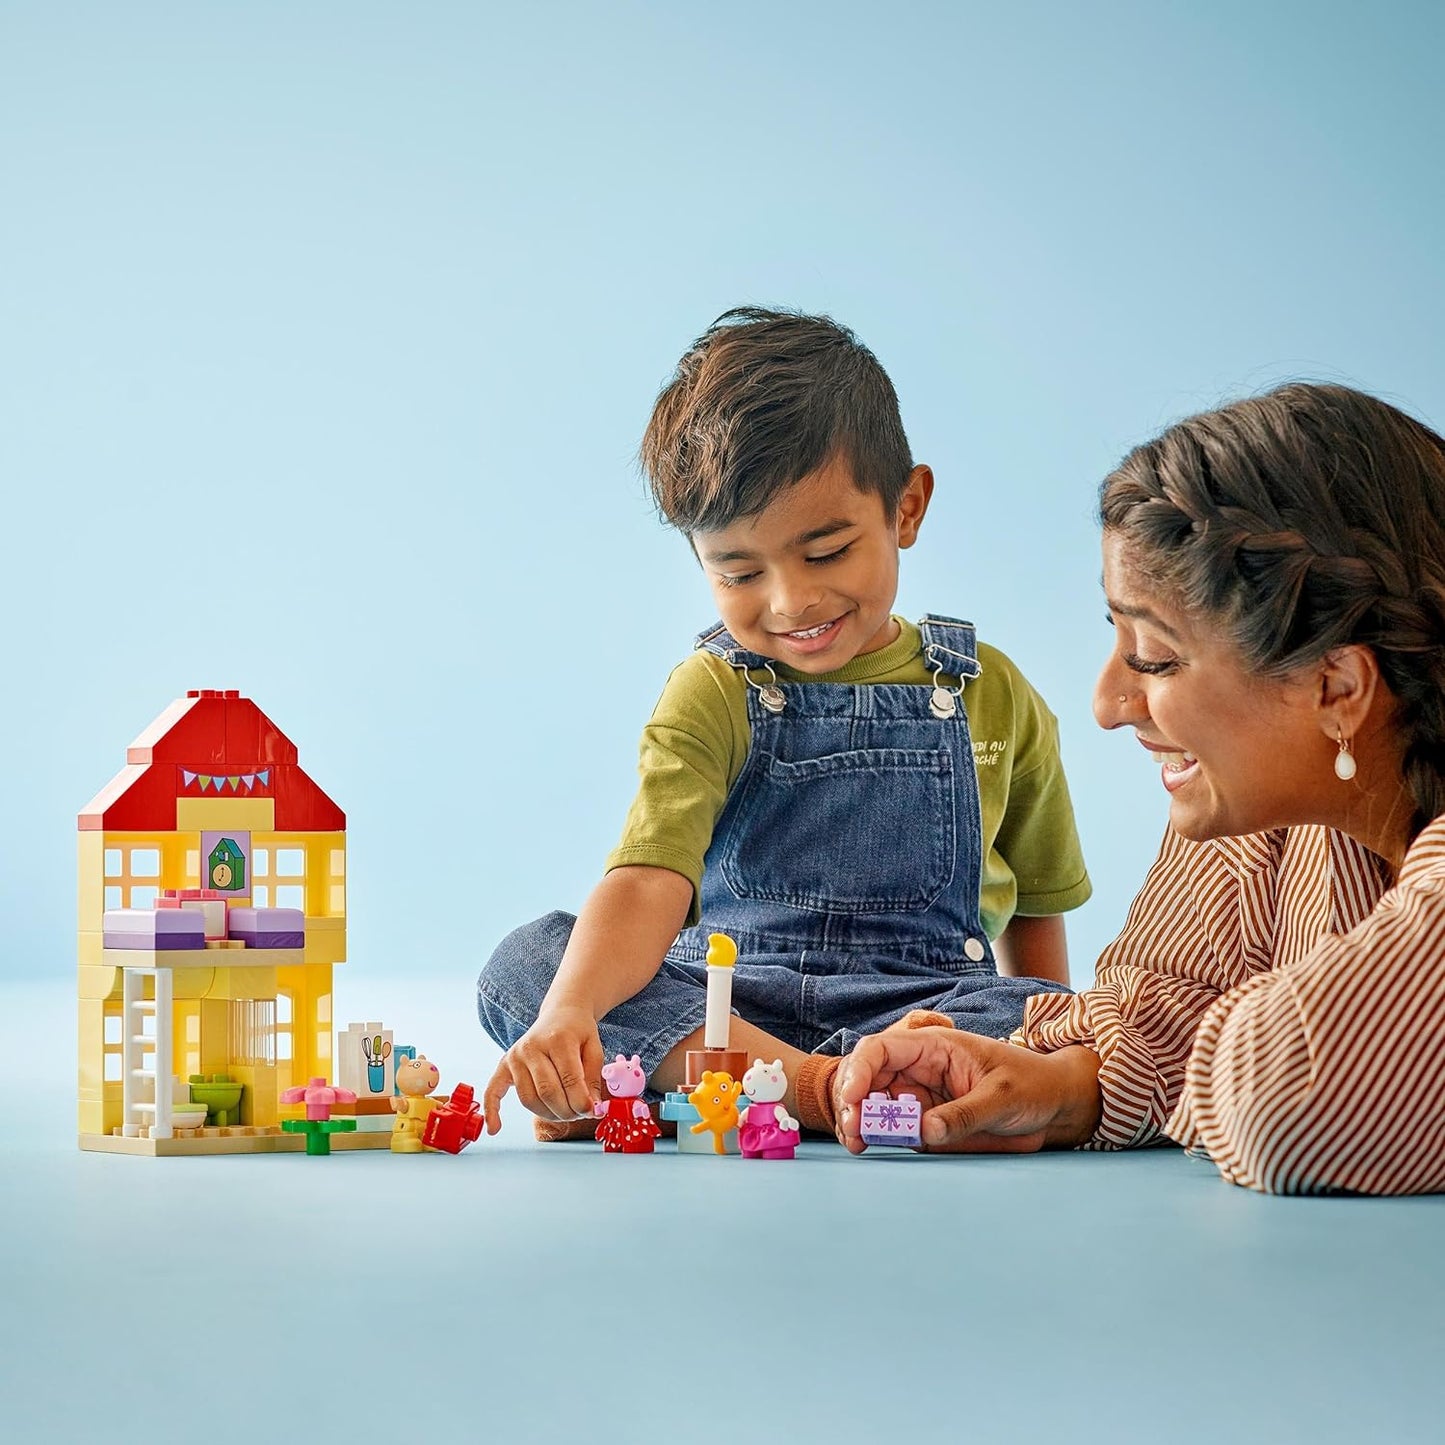 LEGO DUPLO Peppa Pig Birthday House Playset, brinquedos de aprendizagem para crianças para meninas e meninos de 2 anos ou mais com 3 figuras, incluindo. Pedro Pony e Suzy Sheep, além do Teddy da Peppa, Idéia de Presente 10433